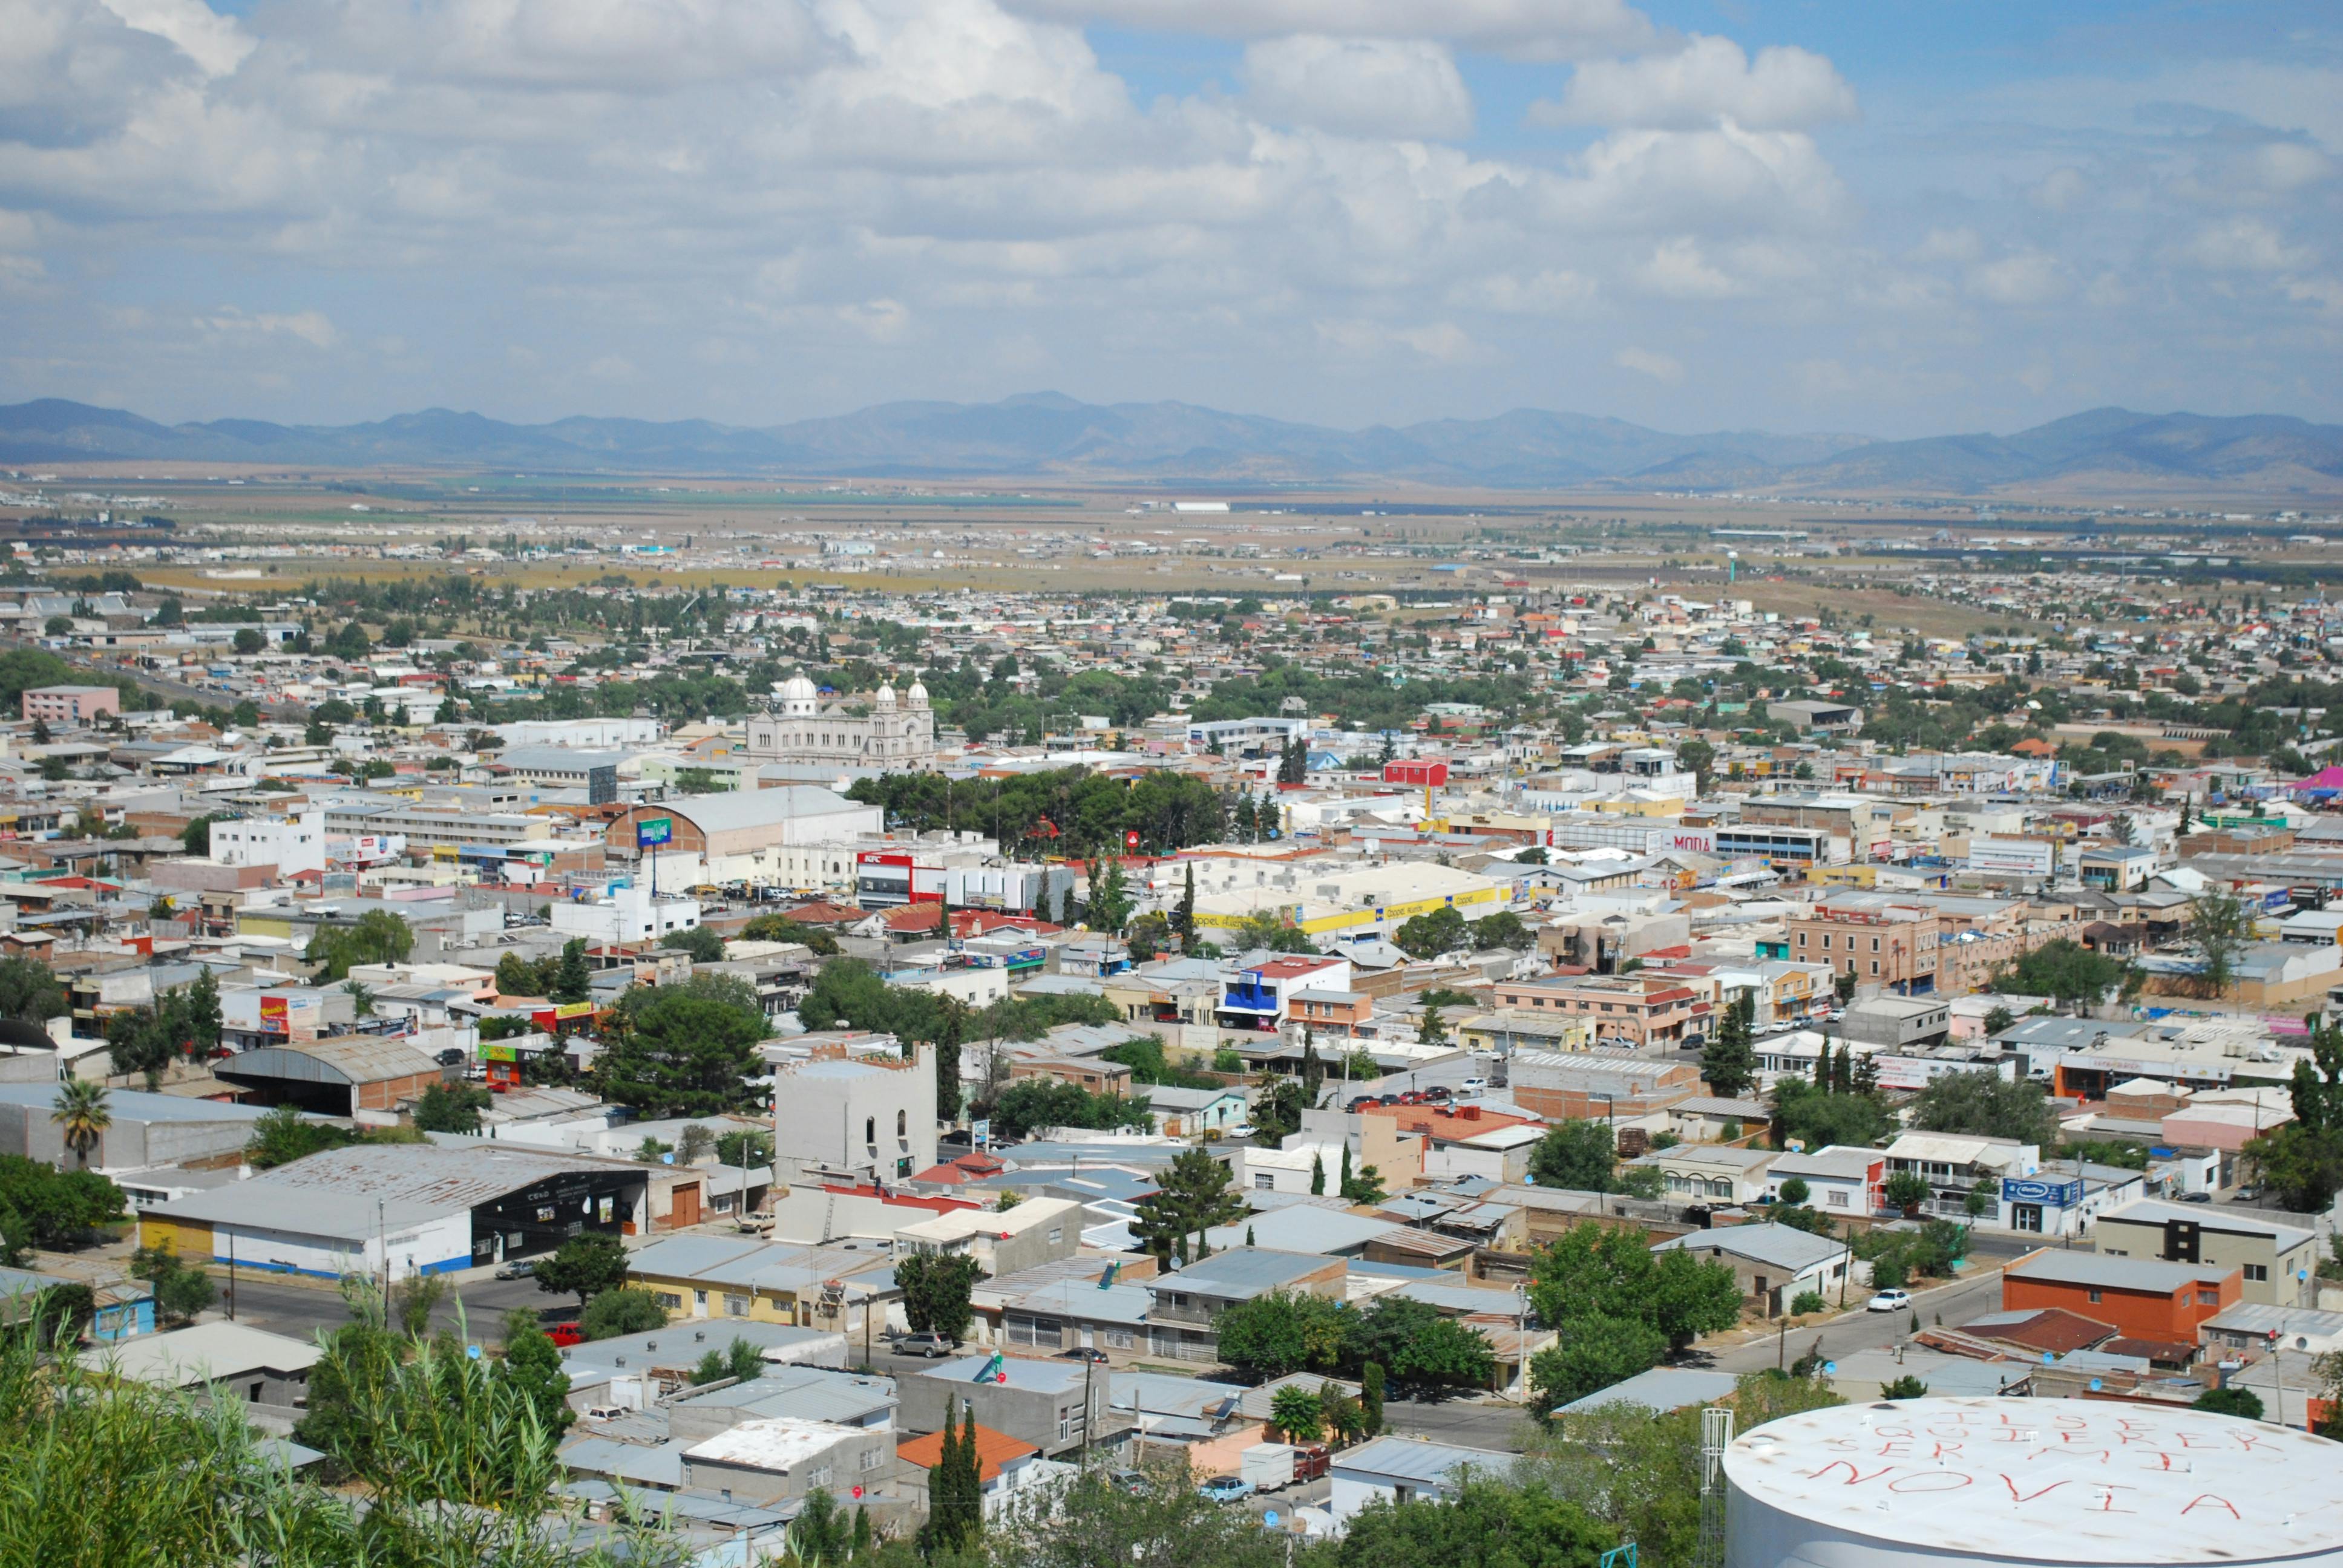 Foto panorámica de la ciudad de Cuauhtemoc.